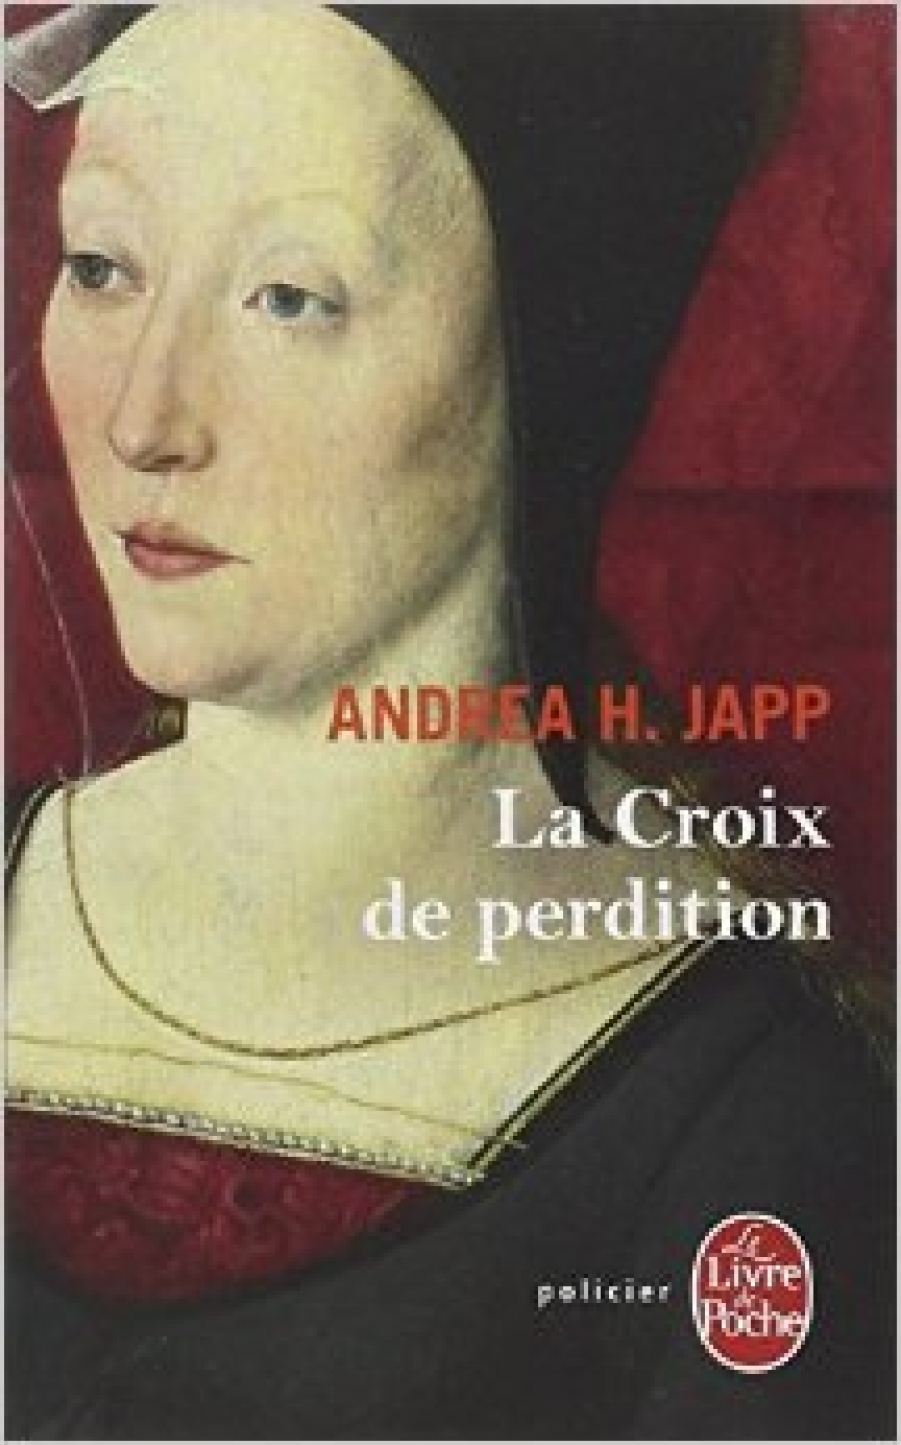 Japp, Andrea H. Croix de Perdition 